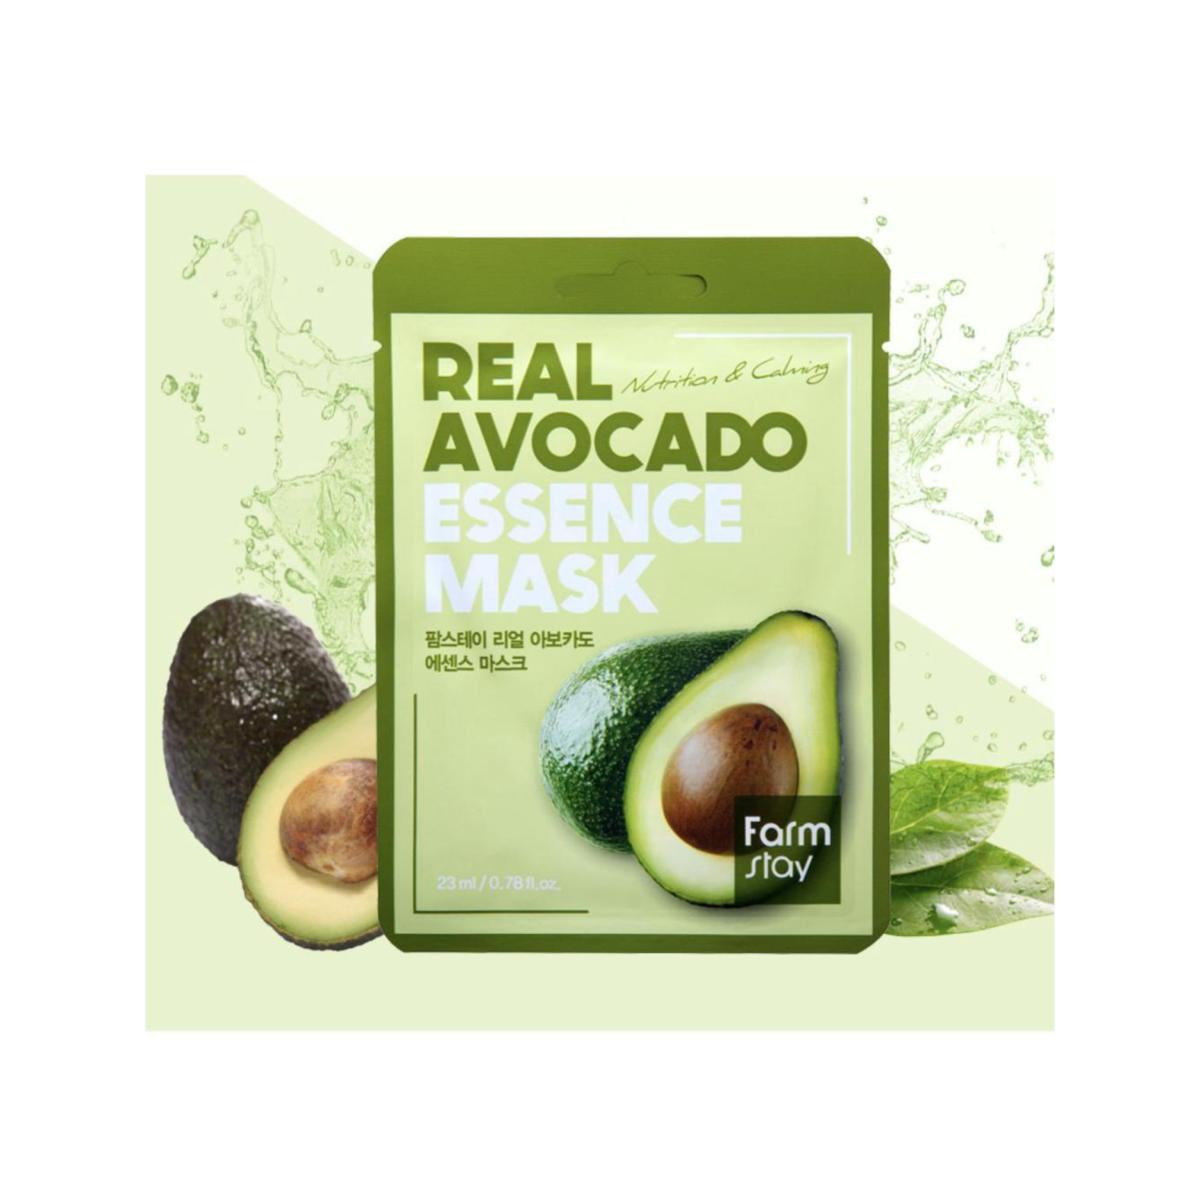 ماسک ورقه ای اووکادو - Avocado sheet mask